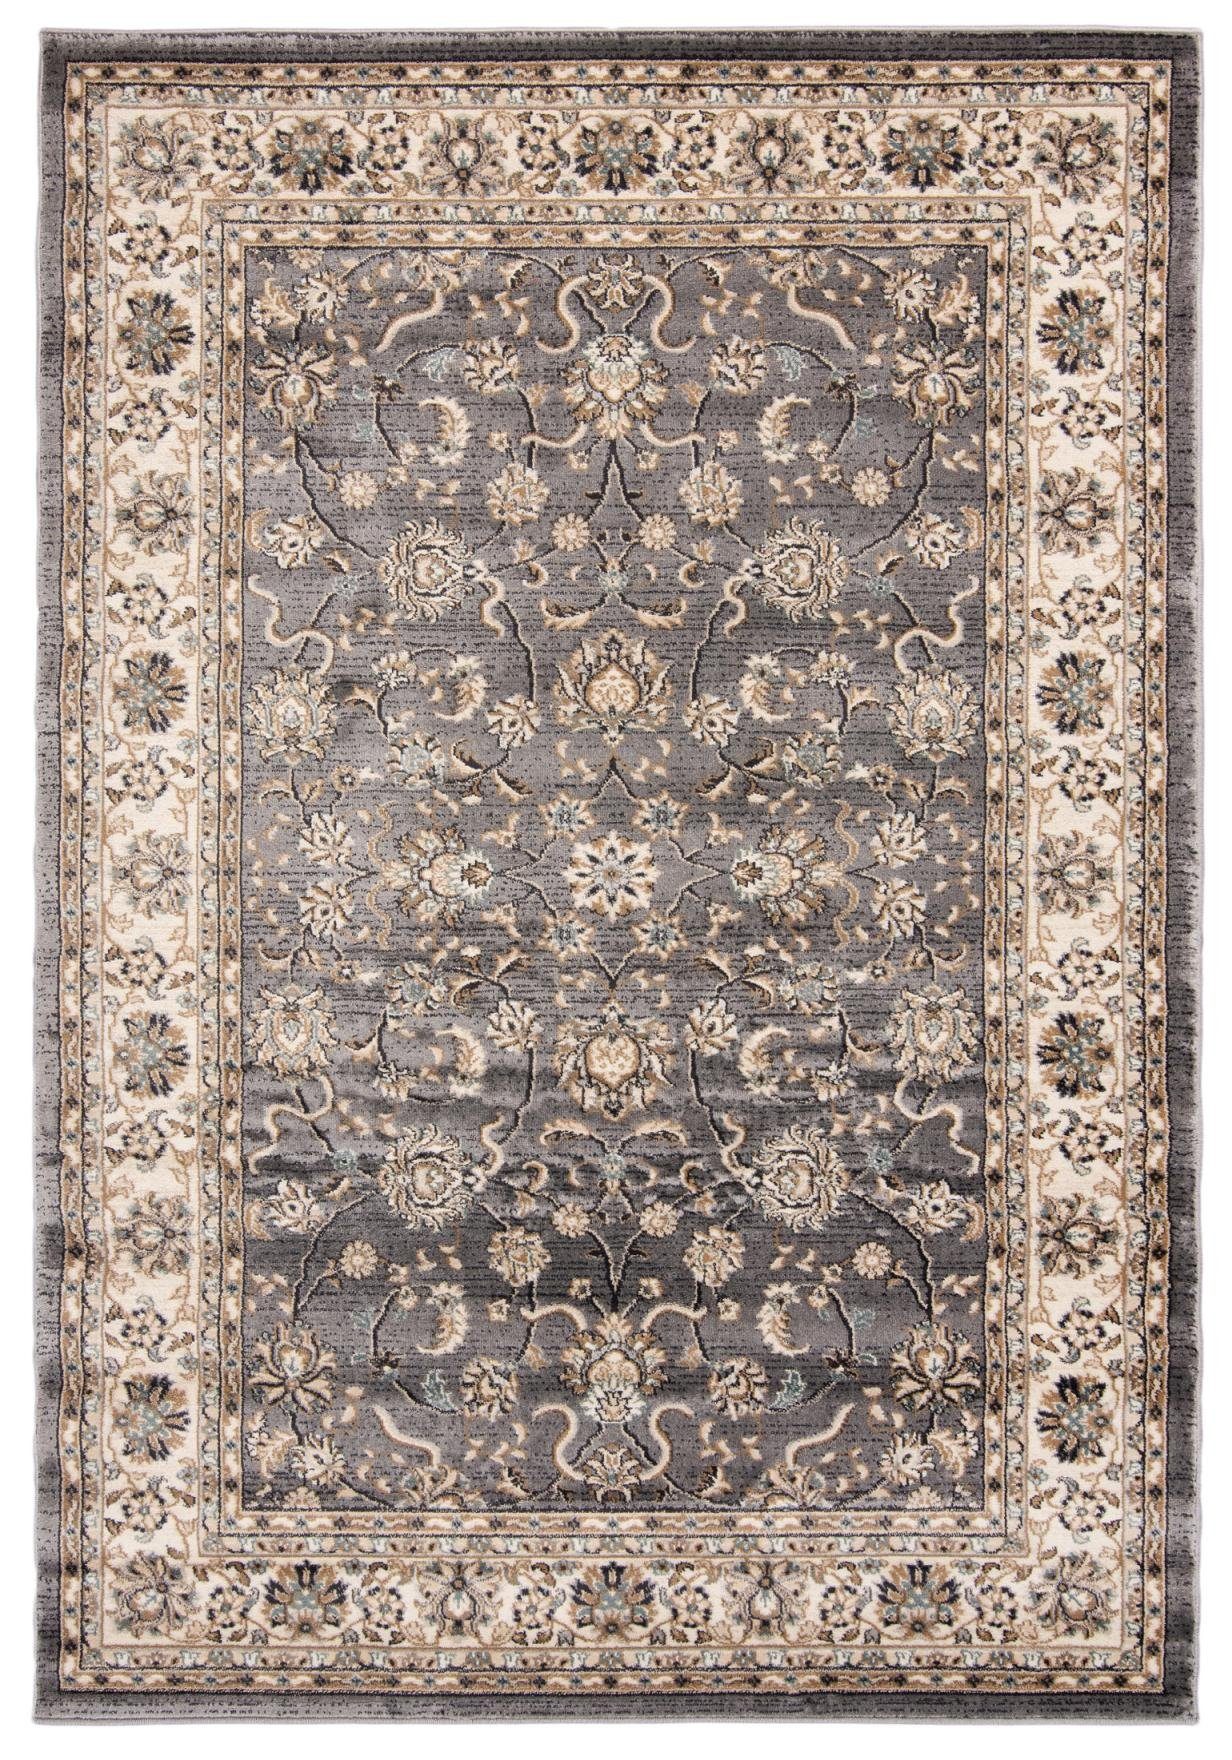 cm, Teppich Fußbodenheizung, Orient 100 Traditioneller Grau, Geeignet Oriente Wohnzimmerteppich - 60 für Mazovia, Teppich Orientteppich Pflegeleicht, x